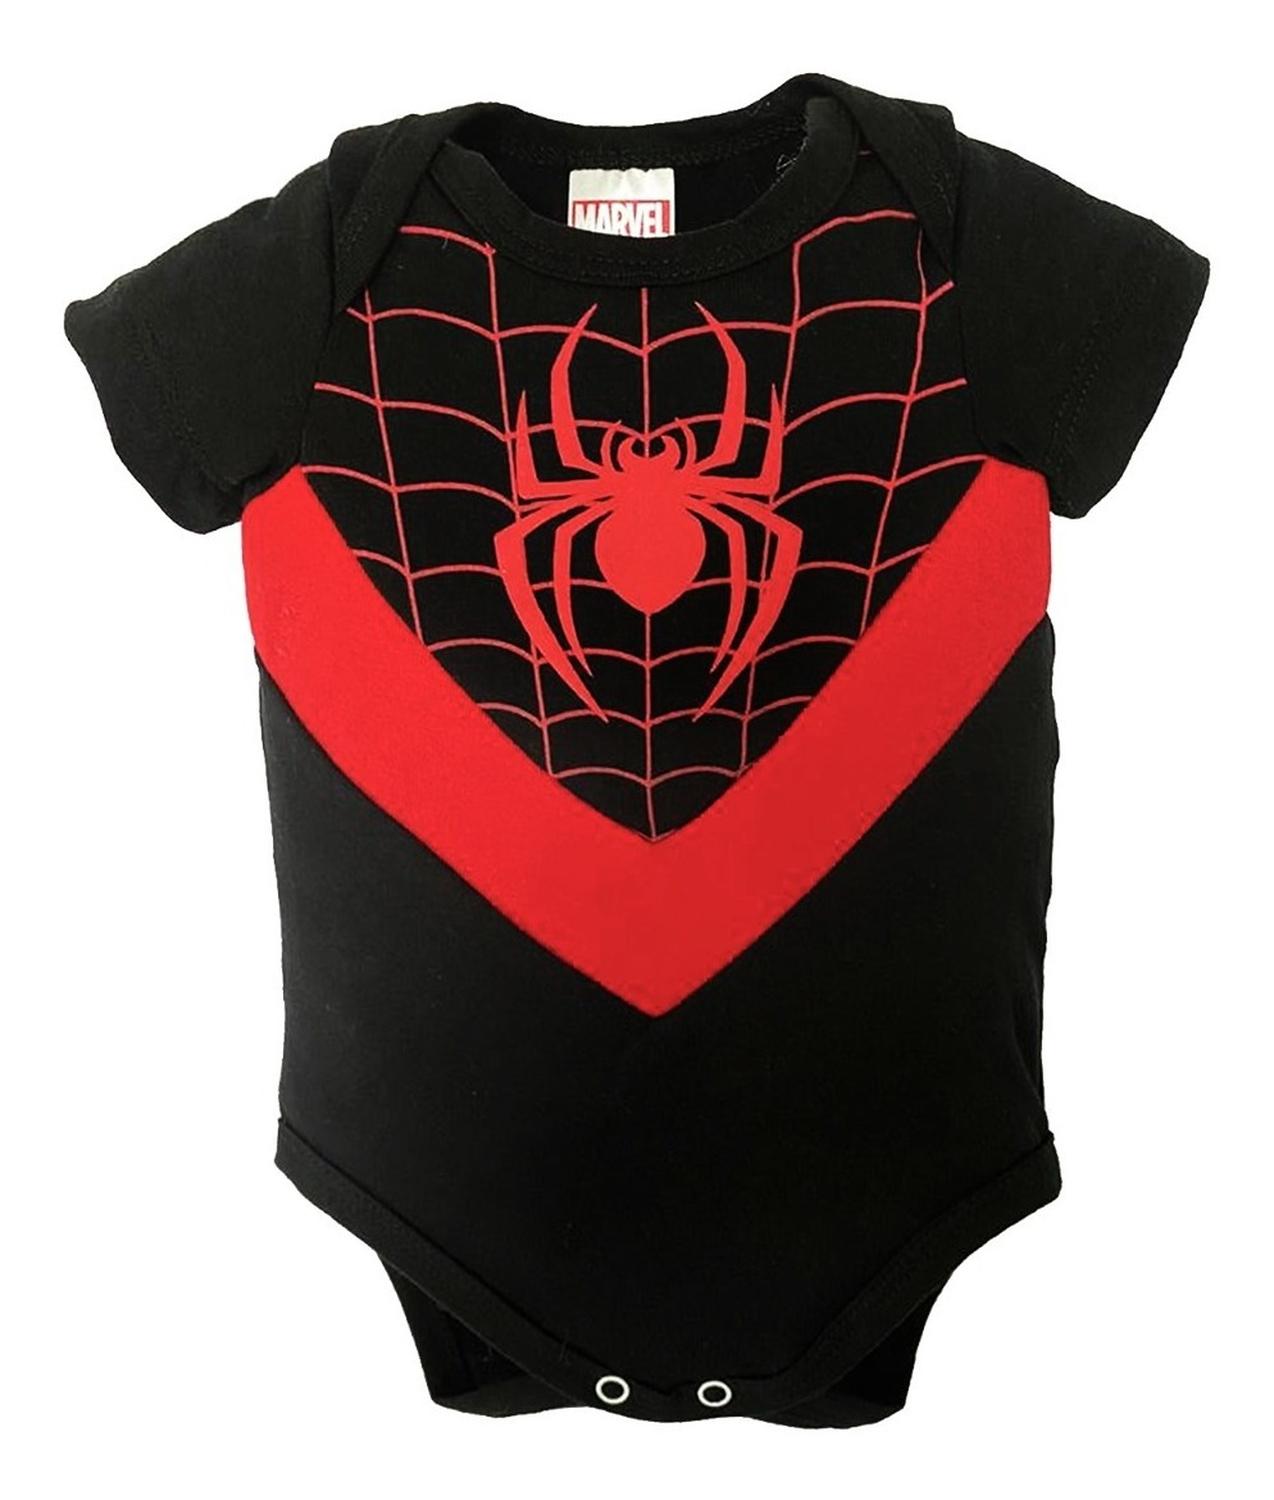 Pañalero Algodon Marvel para Bebé Estampado con Gorro Miles Morales Spiderman